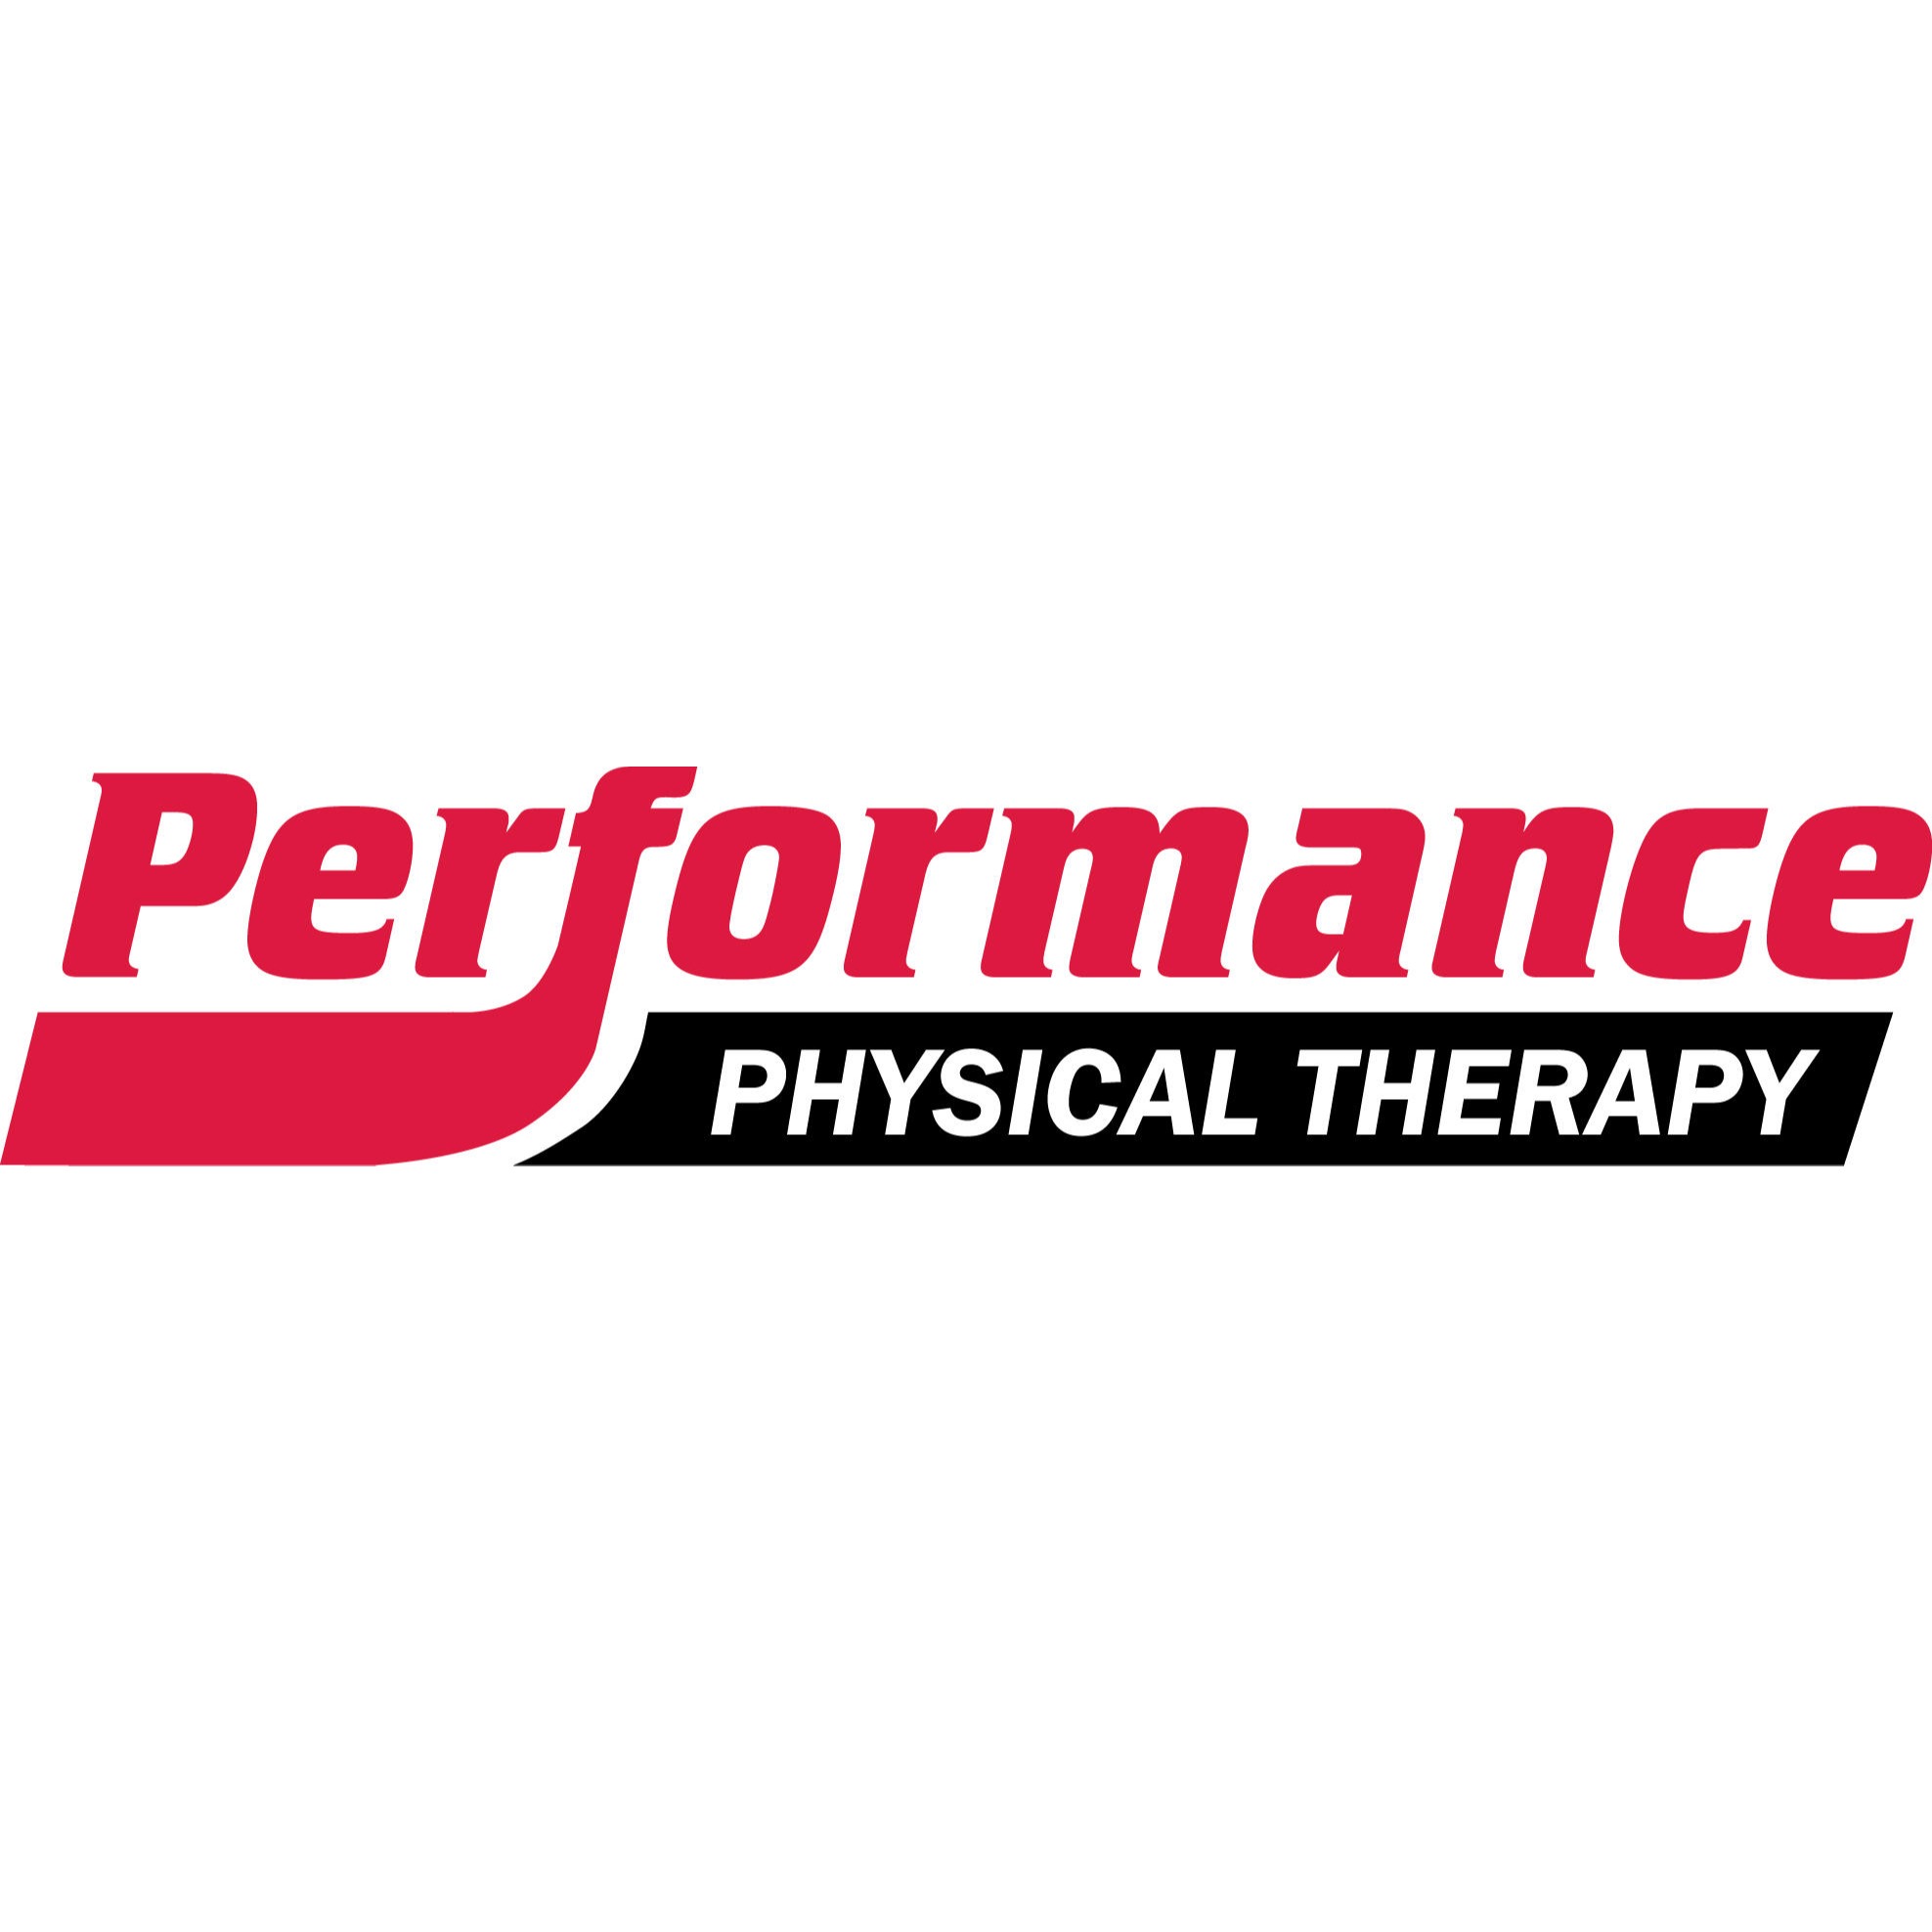 Performance Physical Therapy Bonney Lake, WA - Bonney Lake, WA 98391 - (253)826-8520 | ShowMeLocal.com